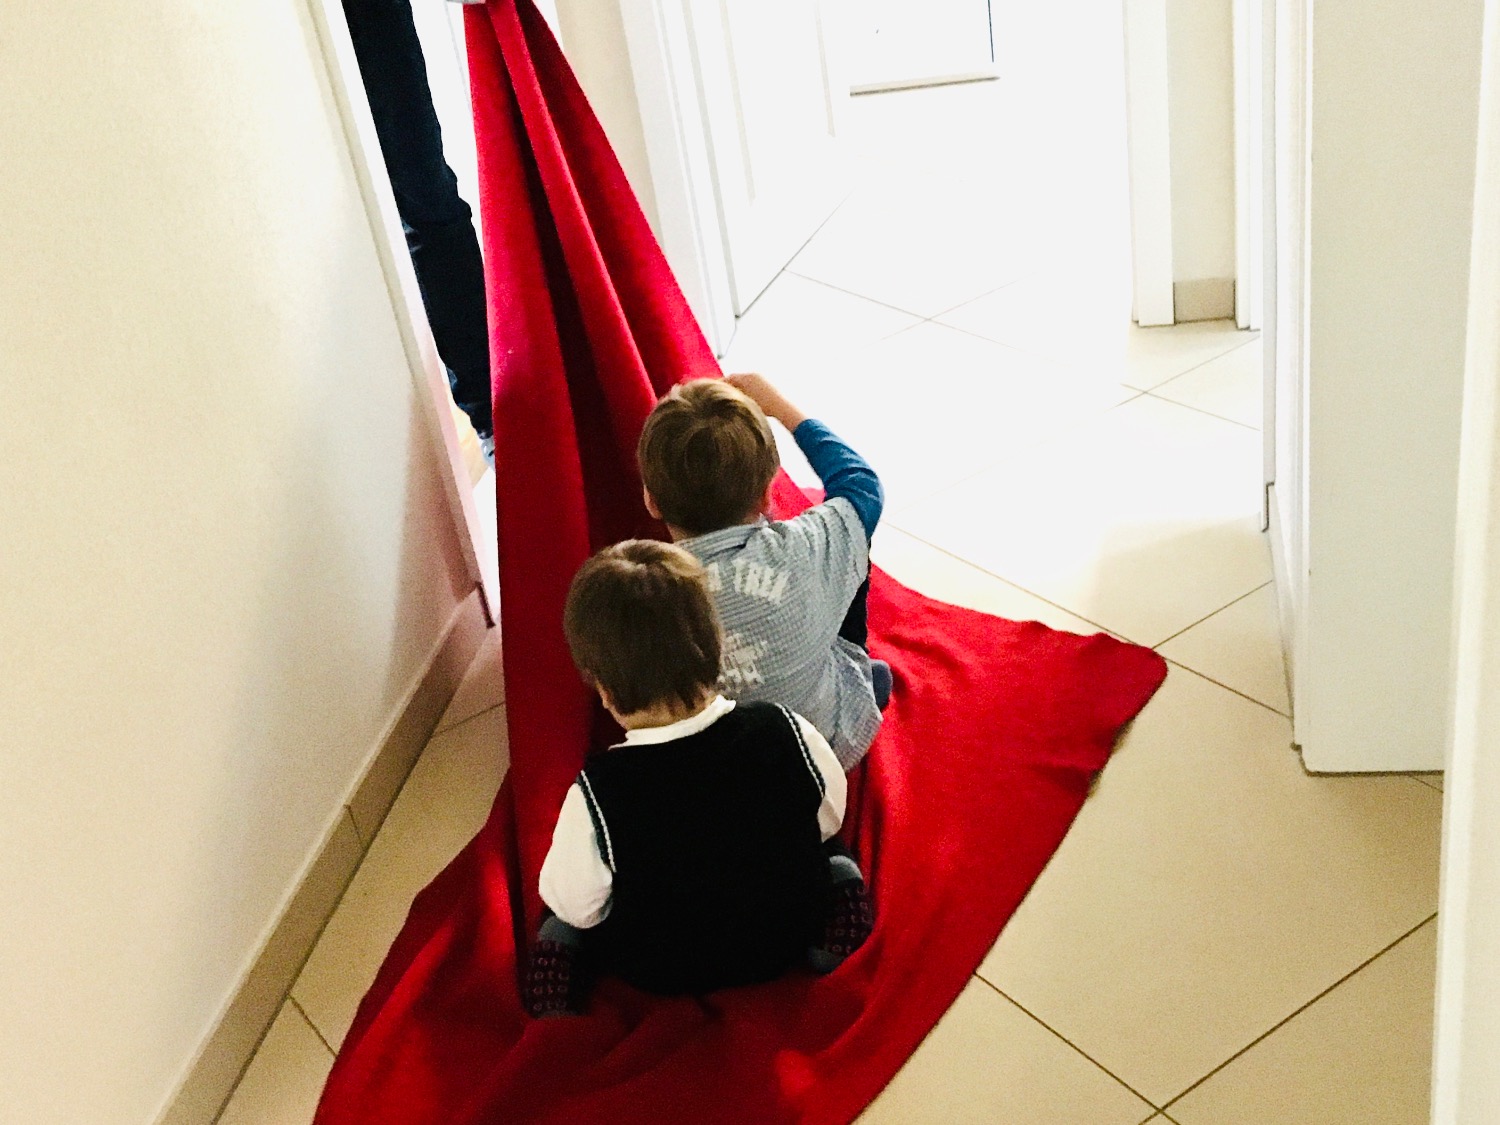 Titelbild zur Idee für die Beschäftigung mit Kindern '(37) Decken-Schlitten fahren'